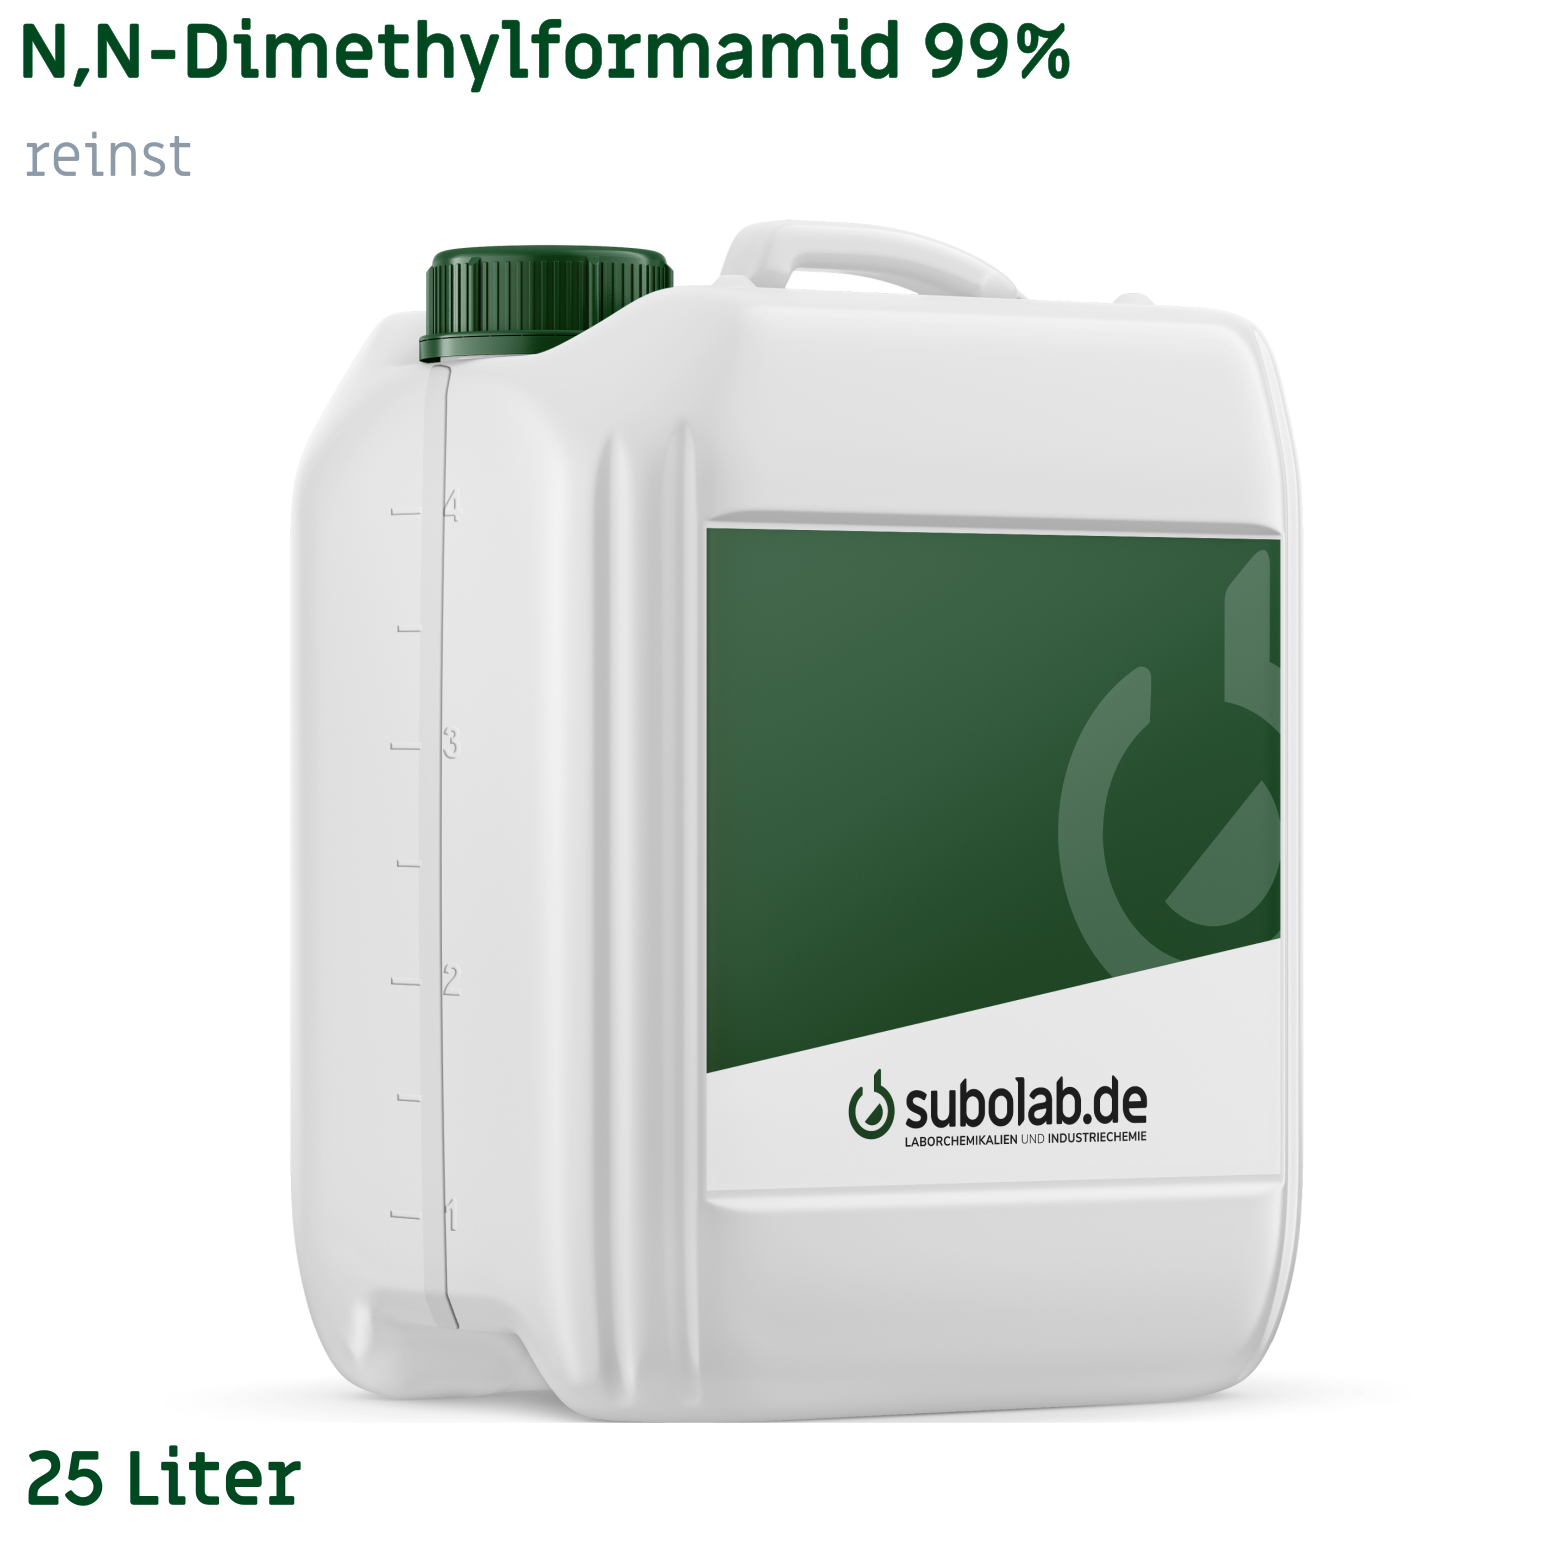 Bild von N,N-Dimethylformamid 99% reinst (25 Liter)